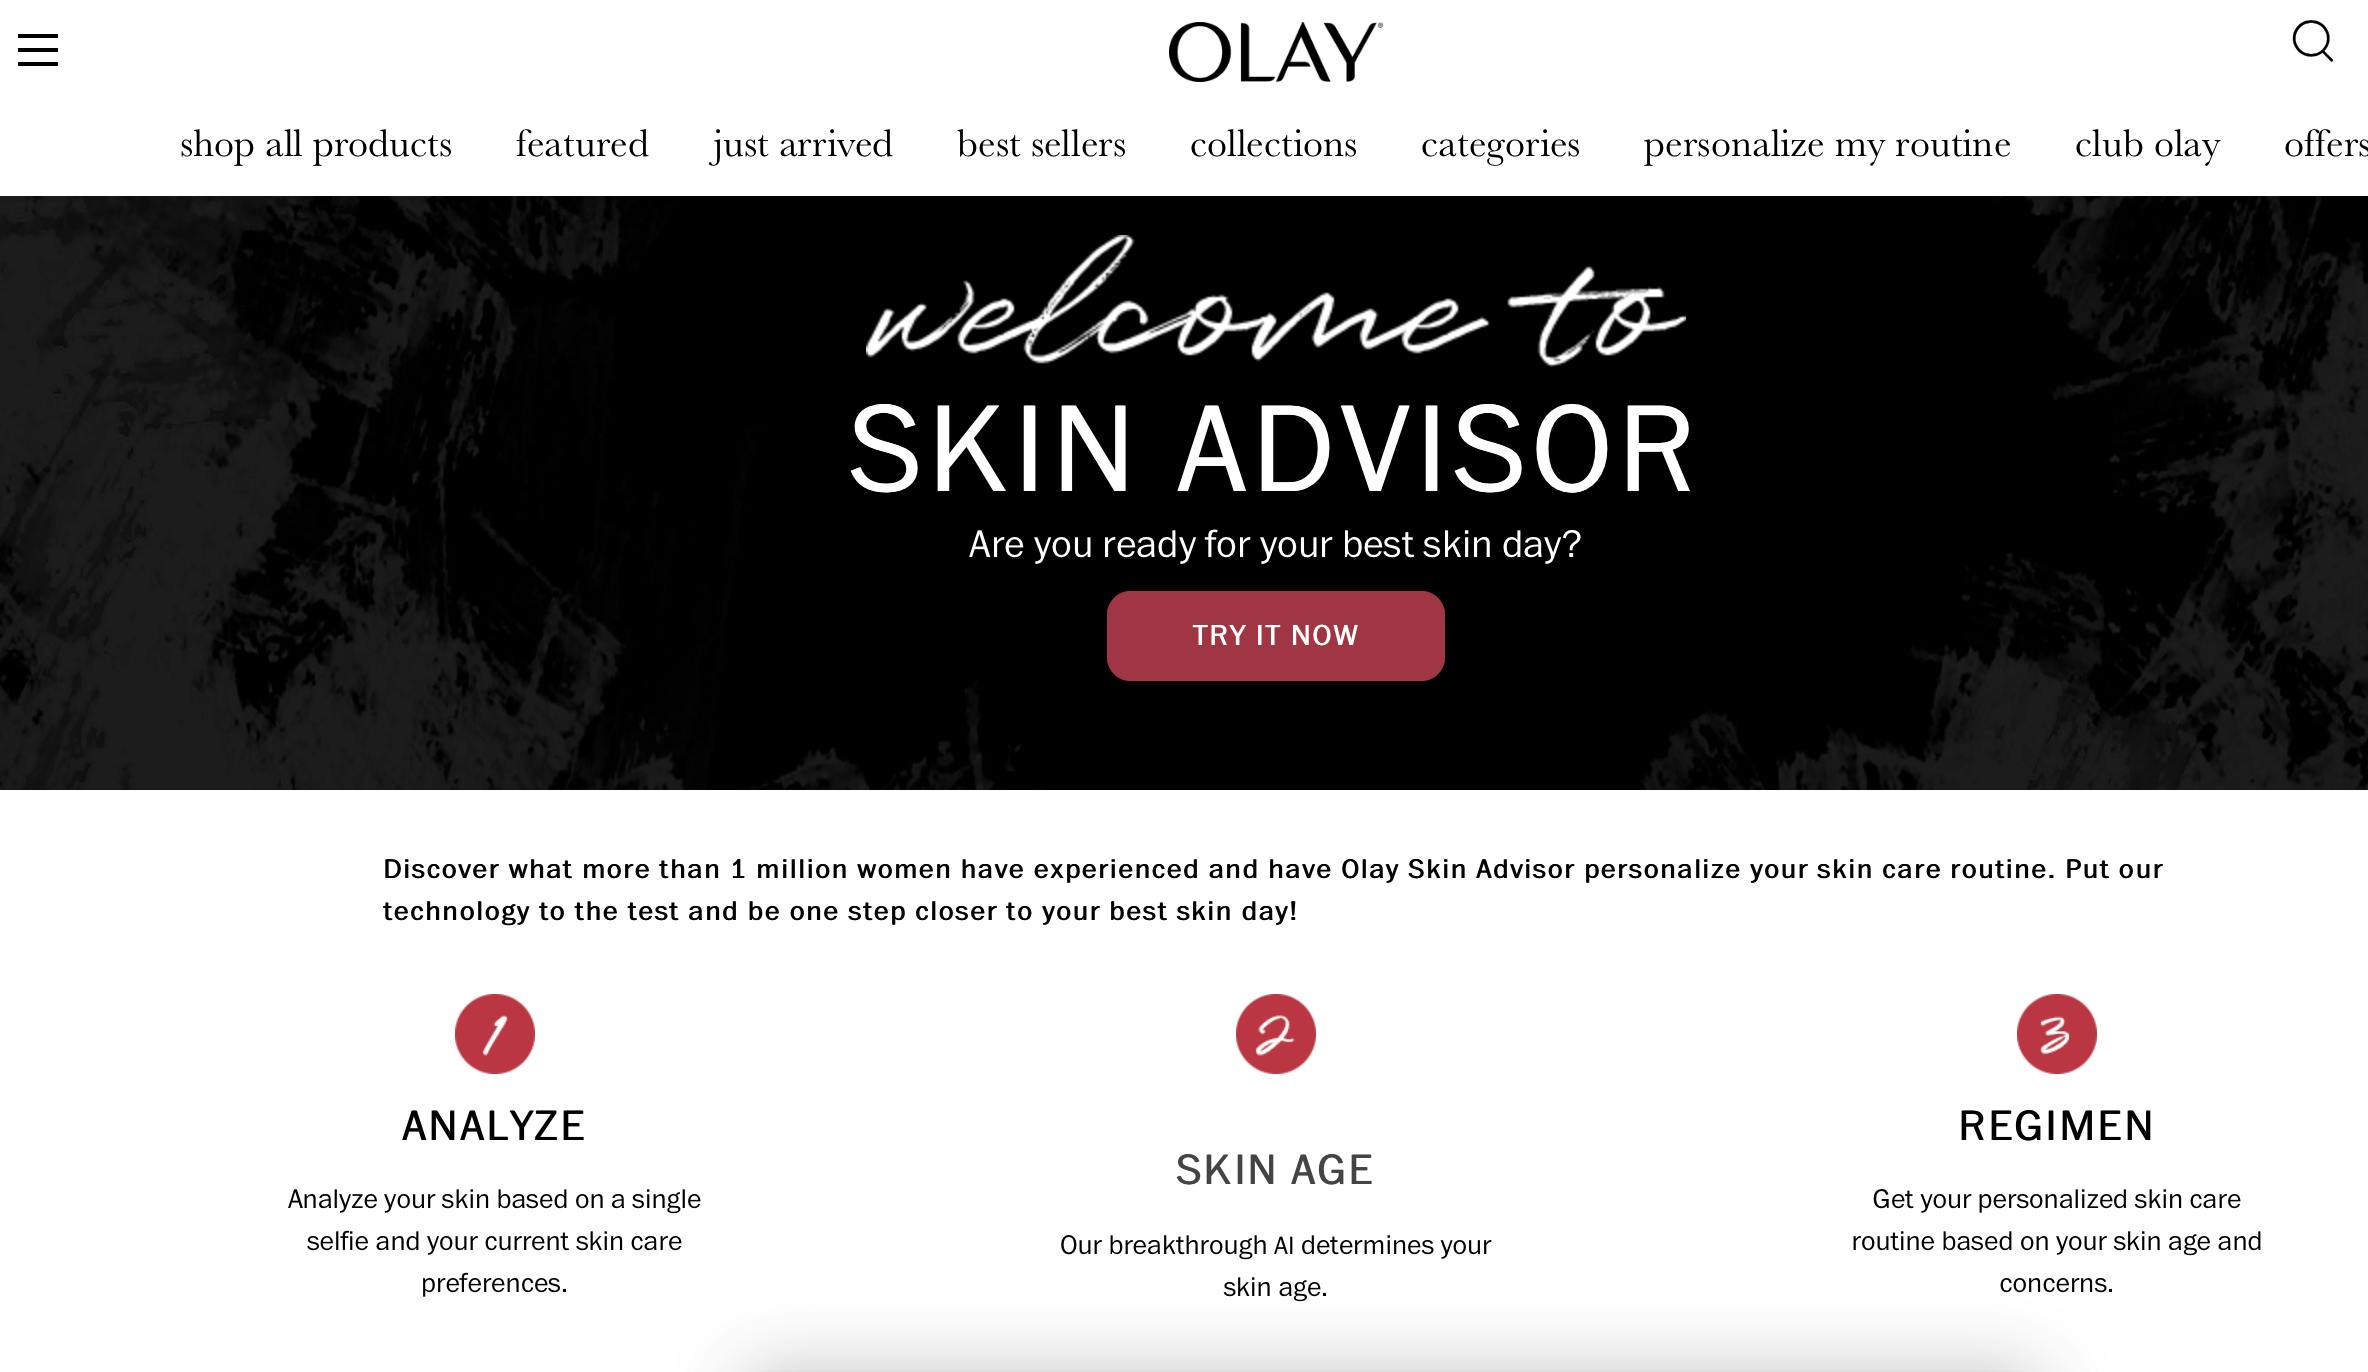 Olayův poradce pro kůži